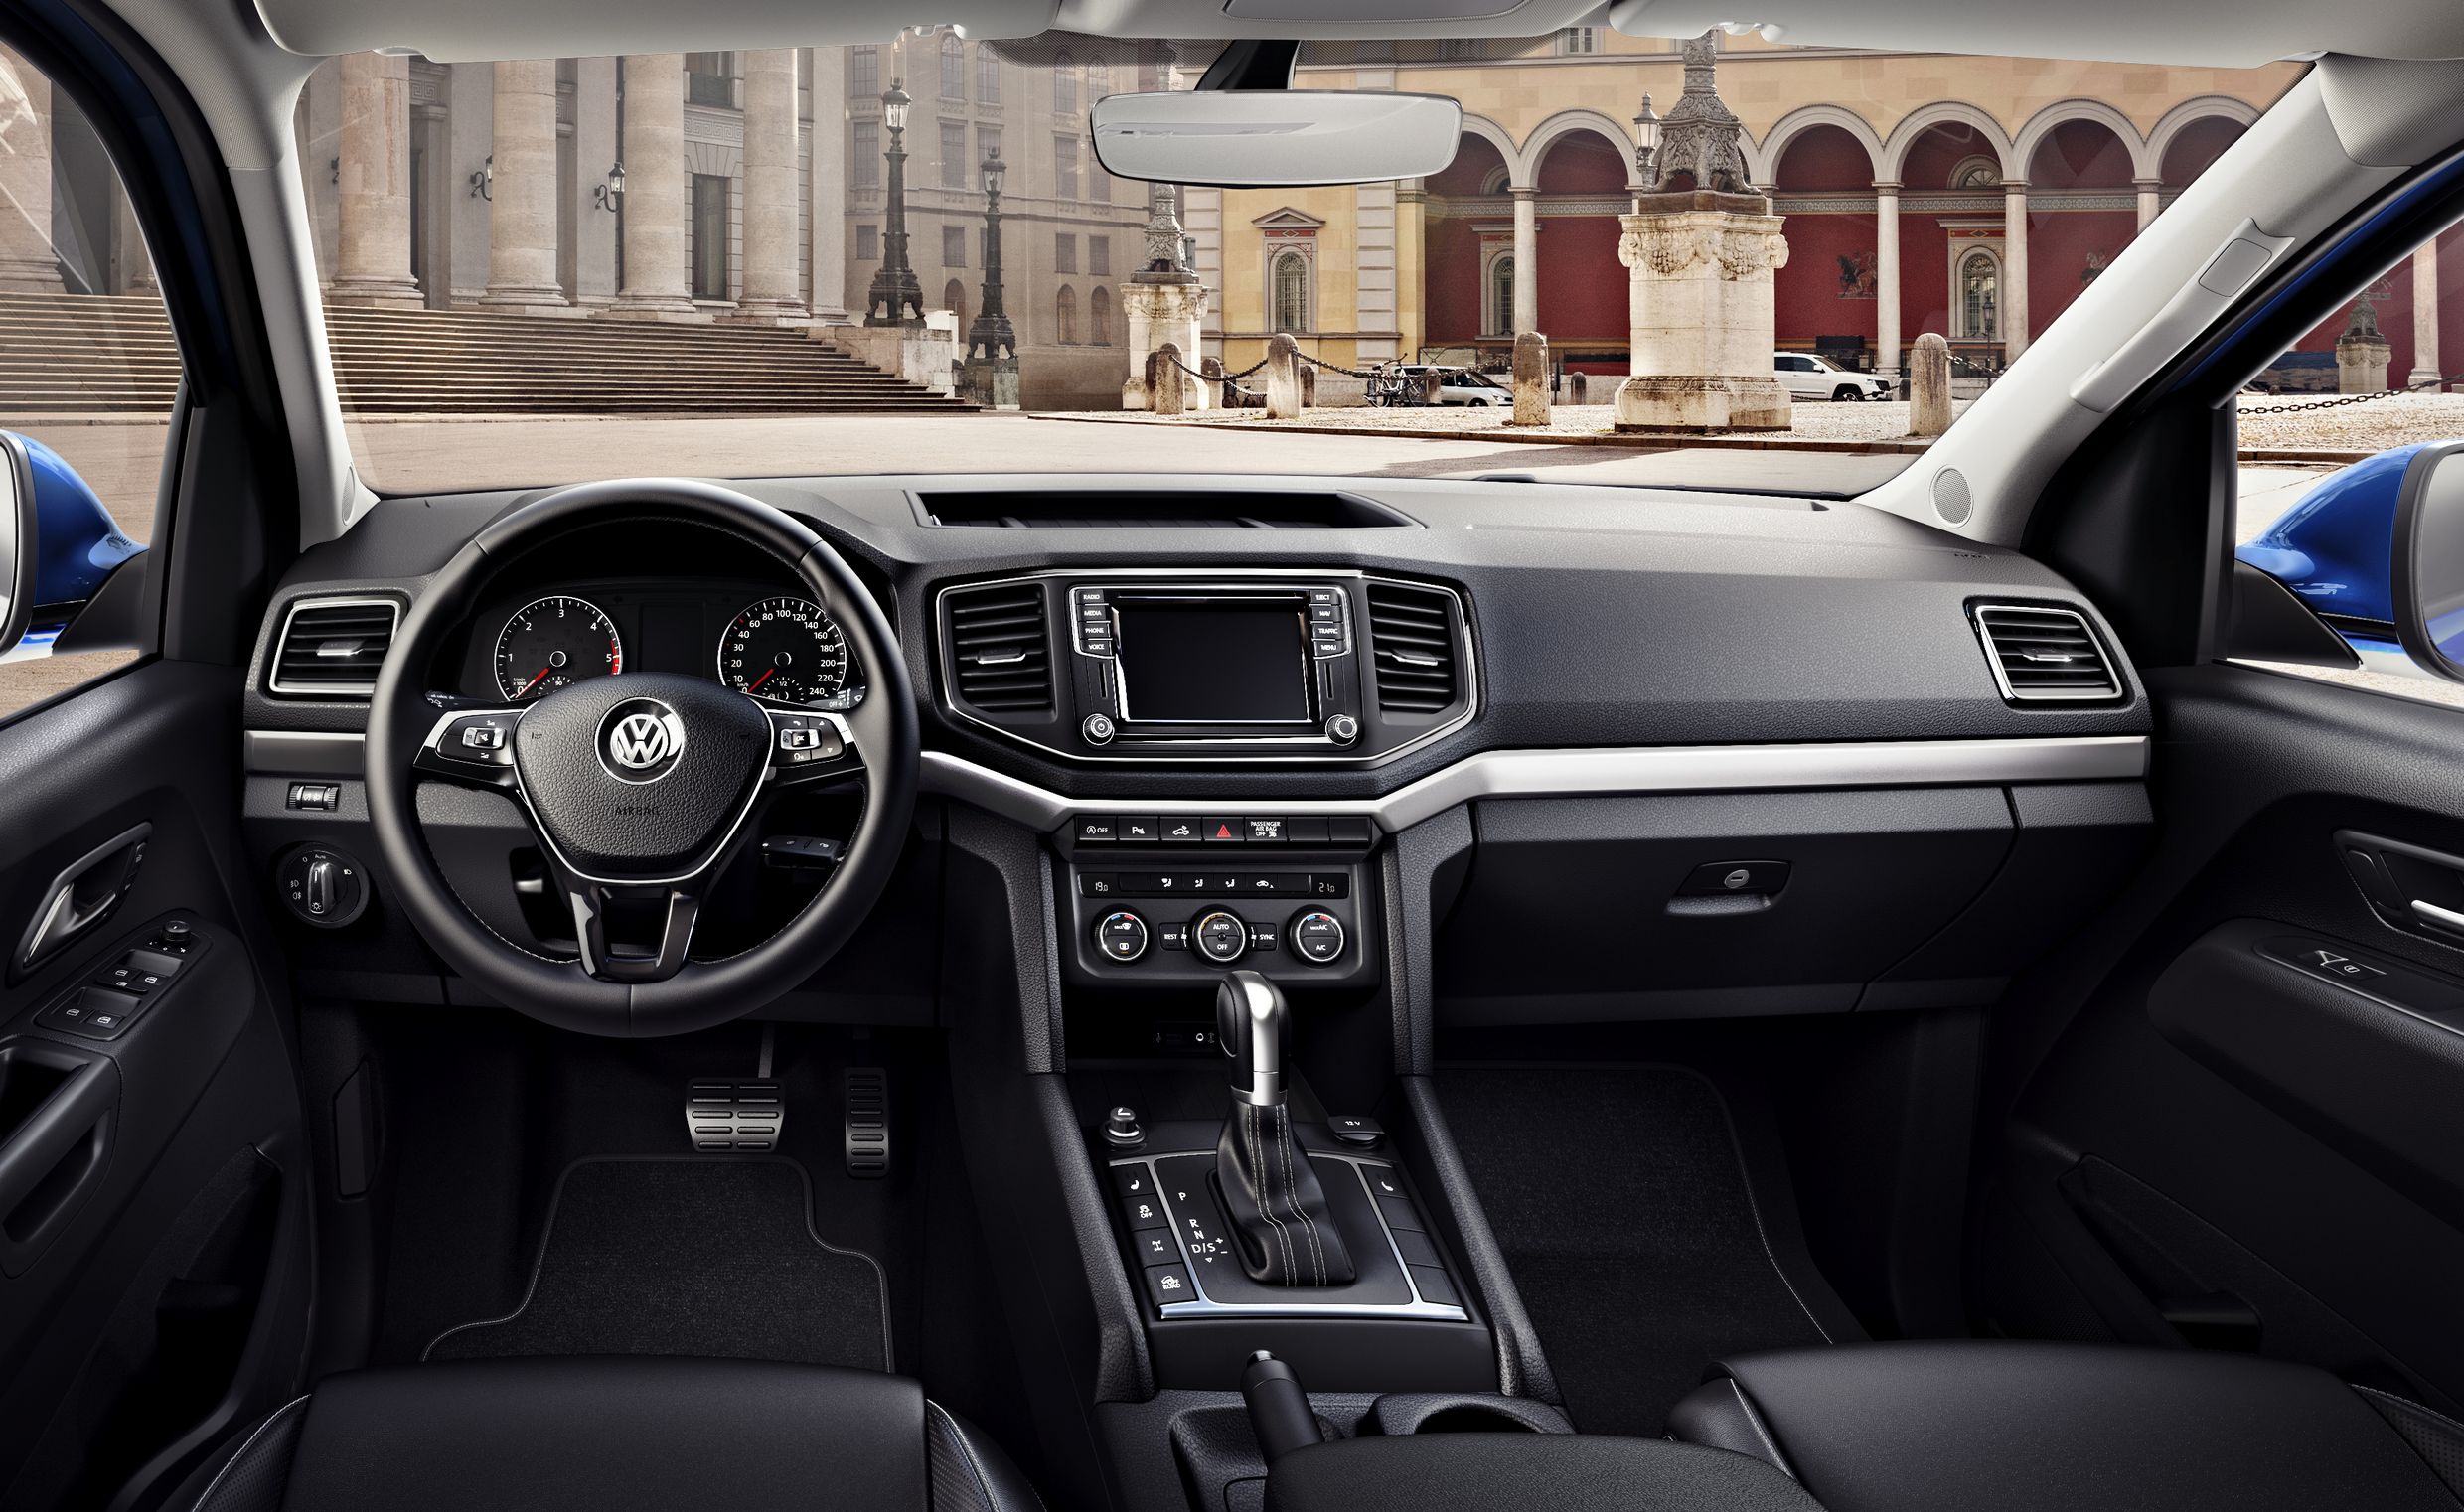 Amarok Aventura mit aktuellem Volkswagen Design: Elegantes Cockpit mit Multifunktions-Lederlenkrad, attraktivem Infotainment und Pedalerie in Edelstahl-Optik.